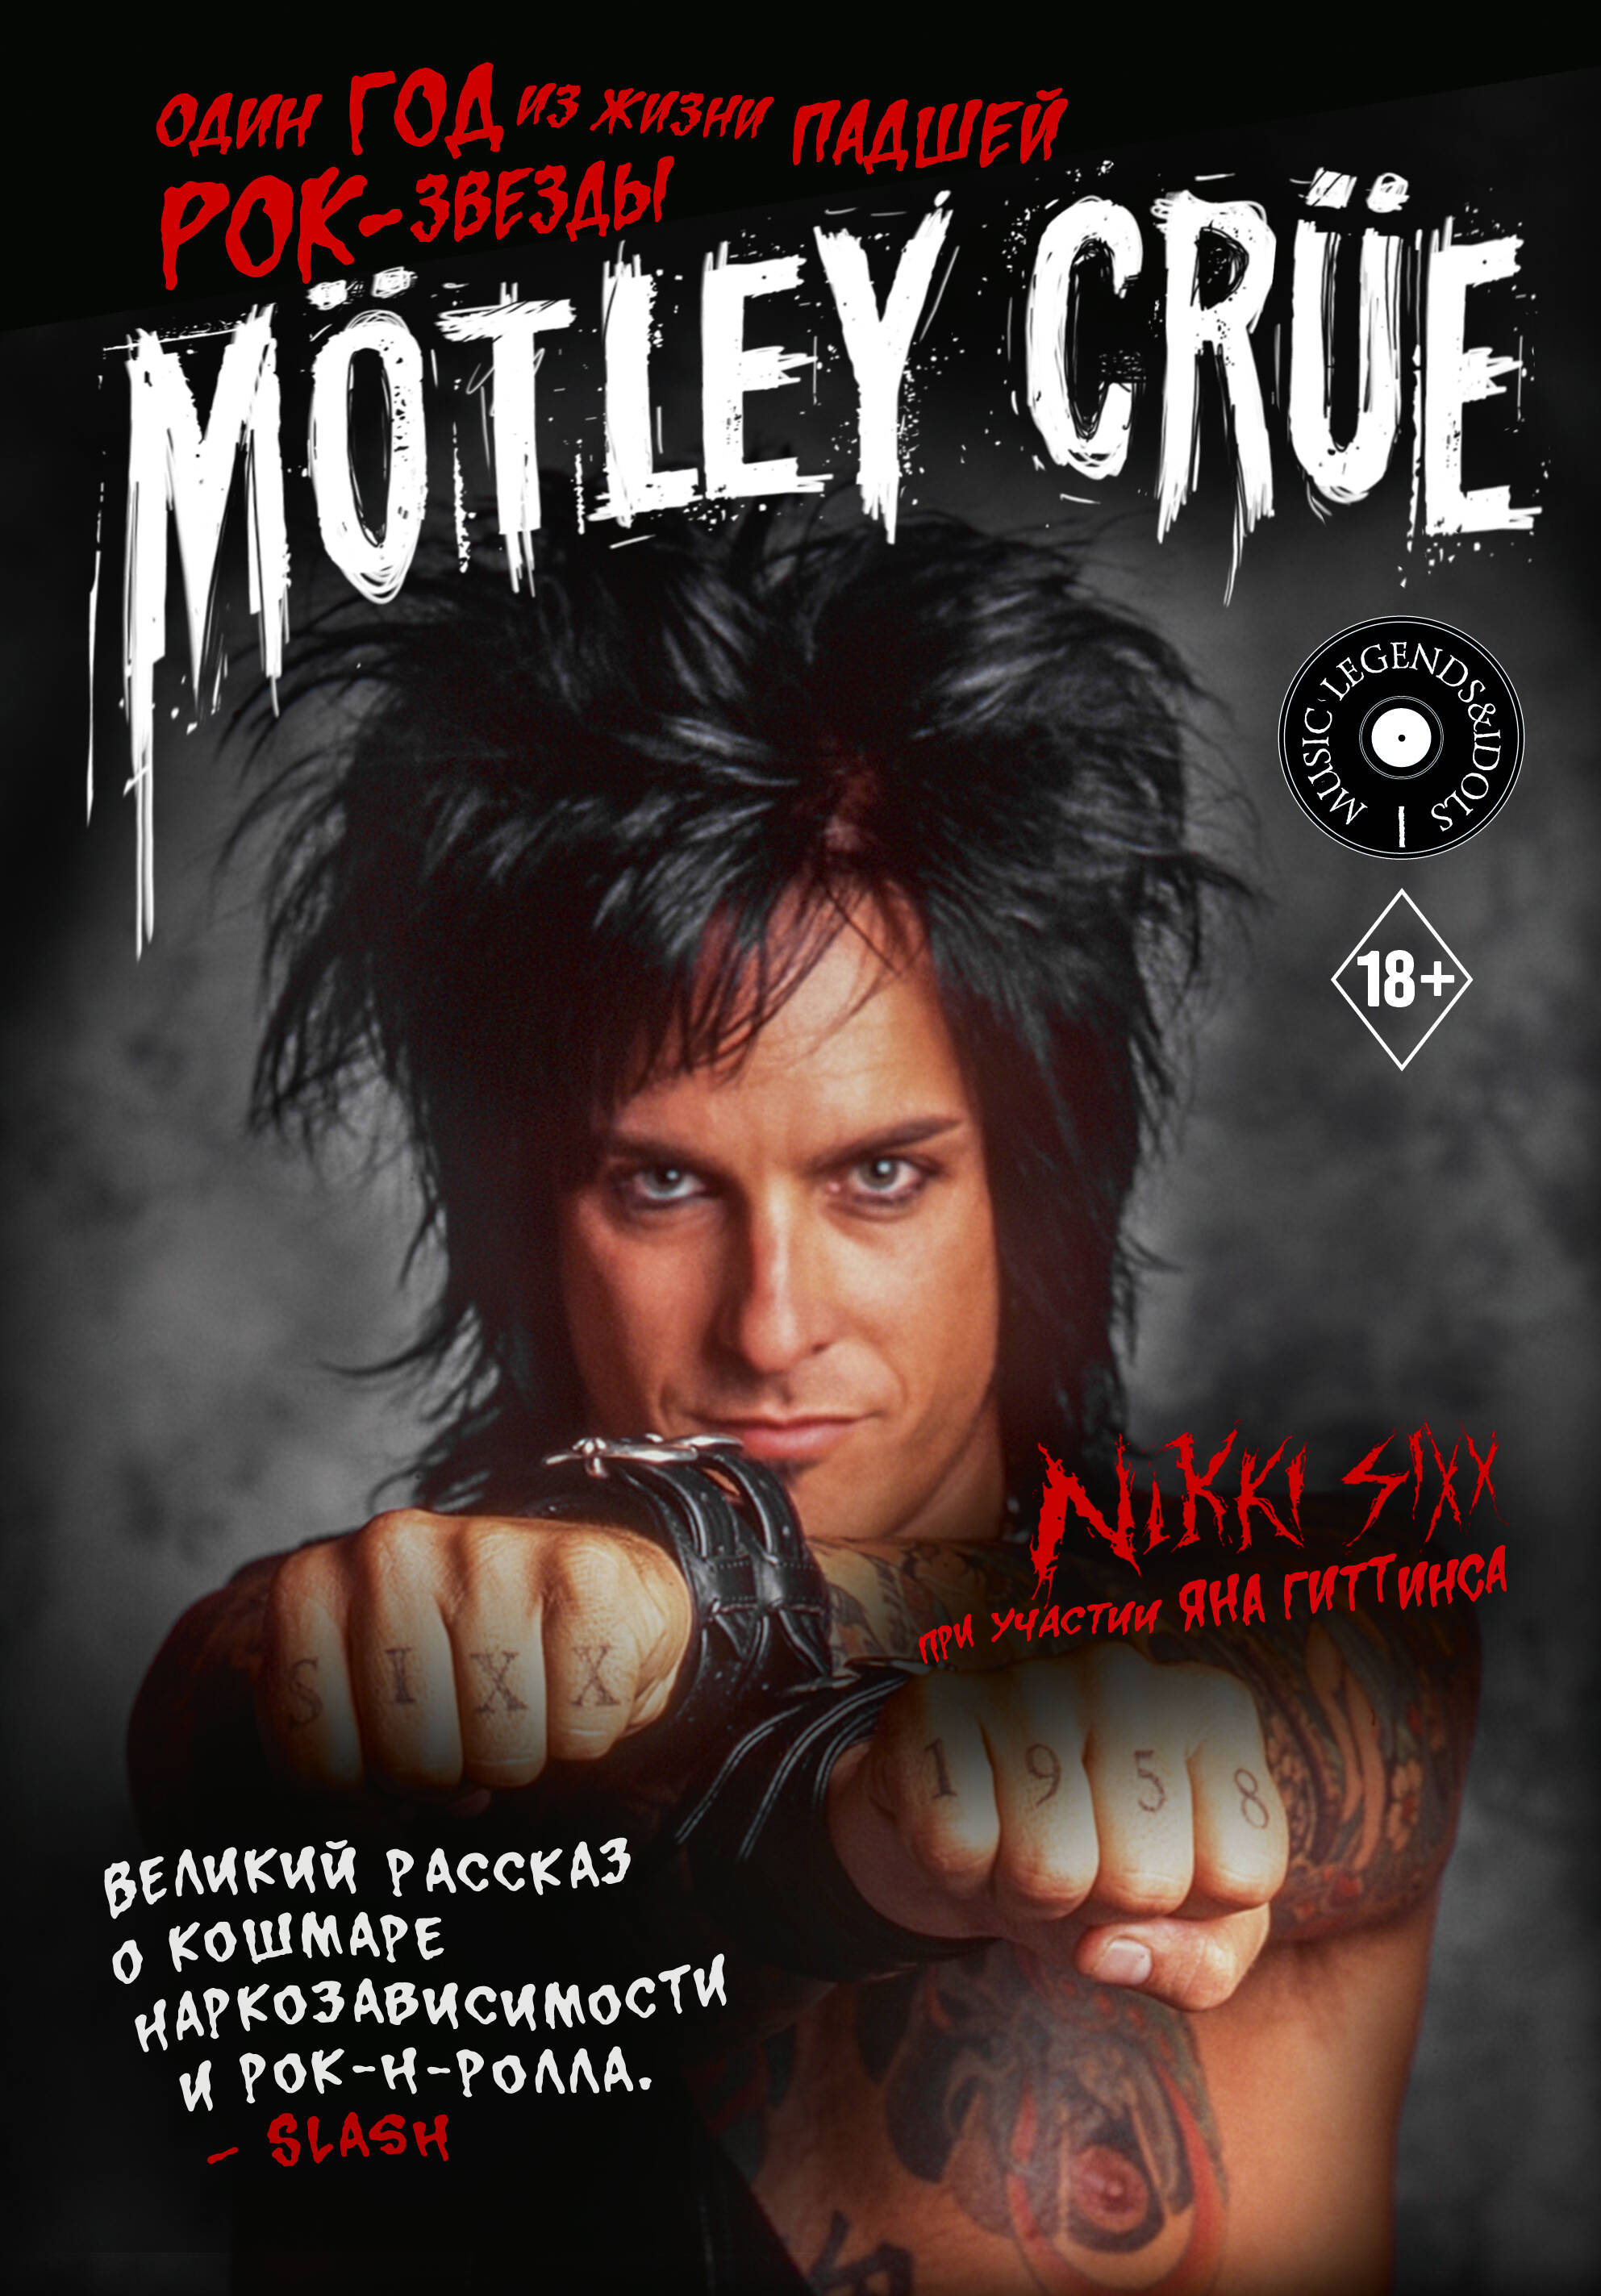 виниловая пластинка motley crue dr feelgood Сикс Никки Mötley Crüe: Один год из жизни падшей рок-звезды